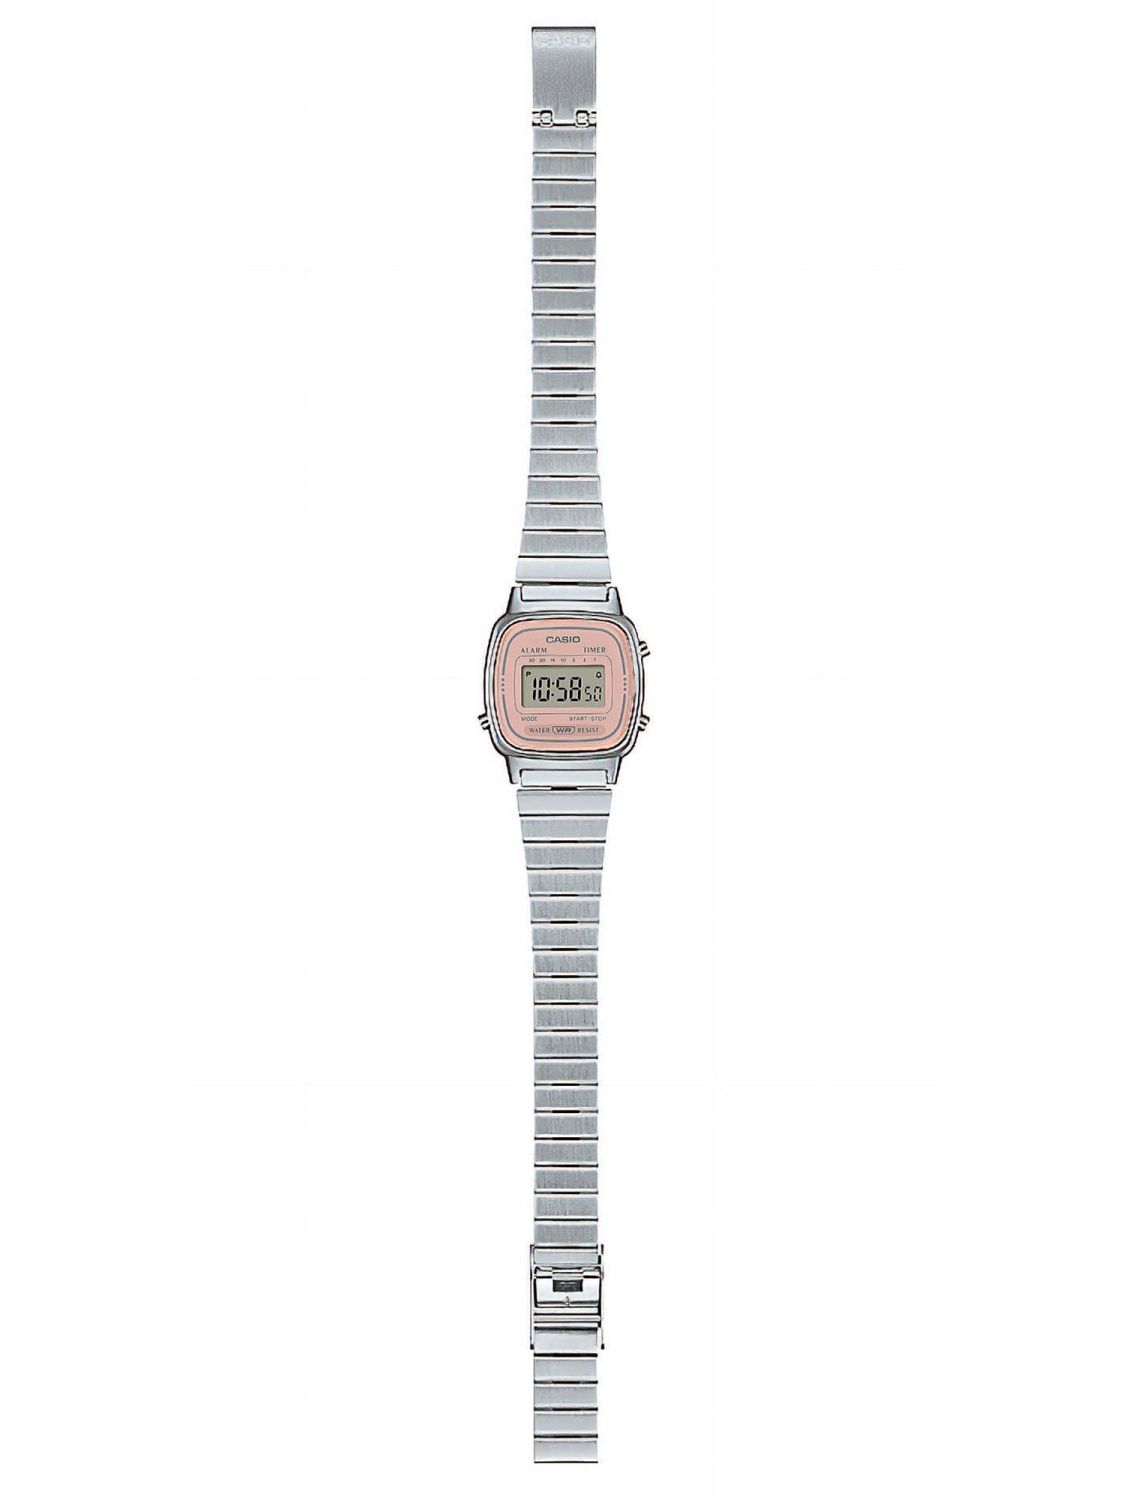 Casio Vintage Mini Women's Digital Watch Silver/Pink LA670WEA-4A2EF •  uhrcenter